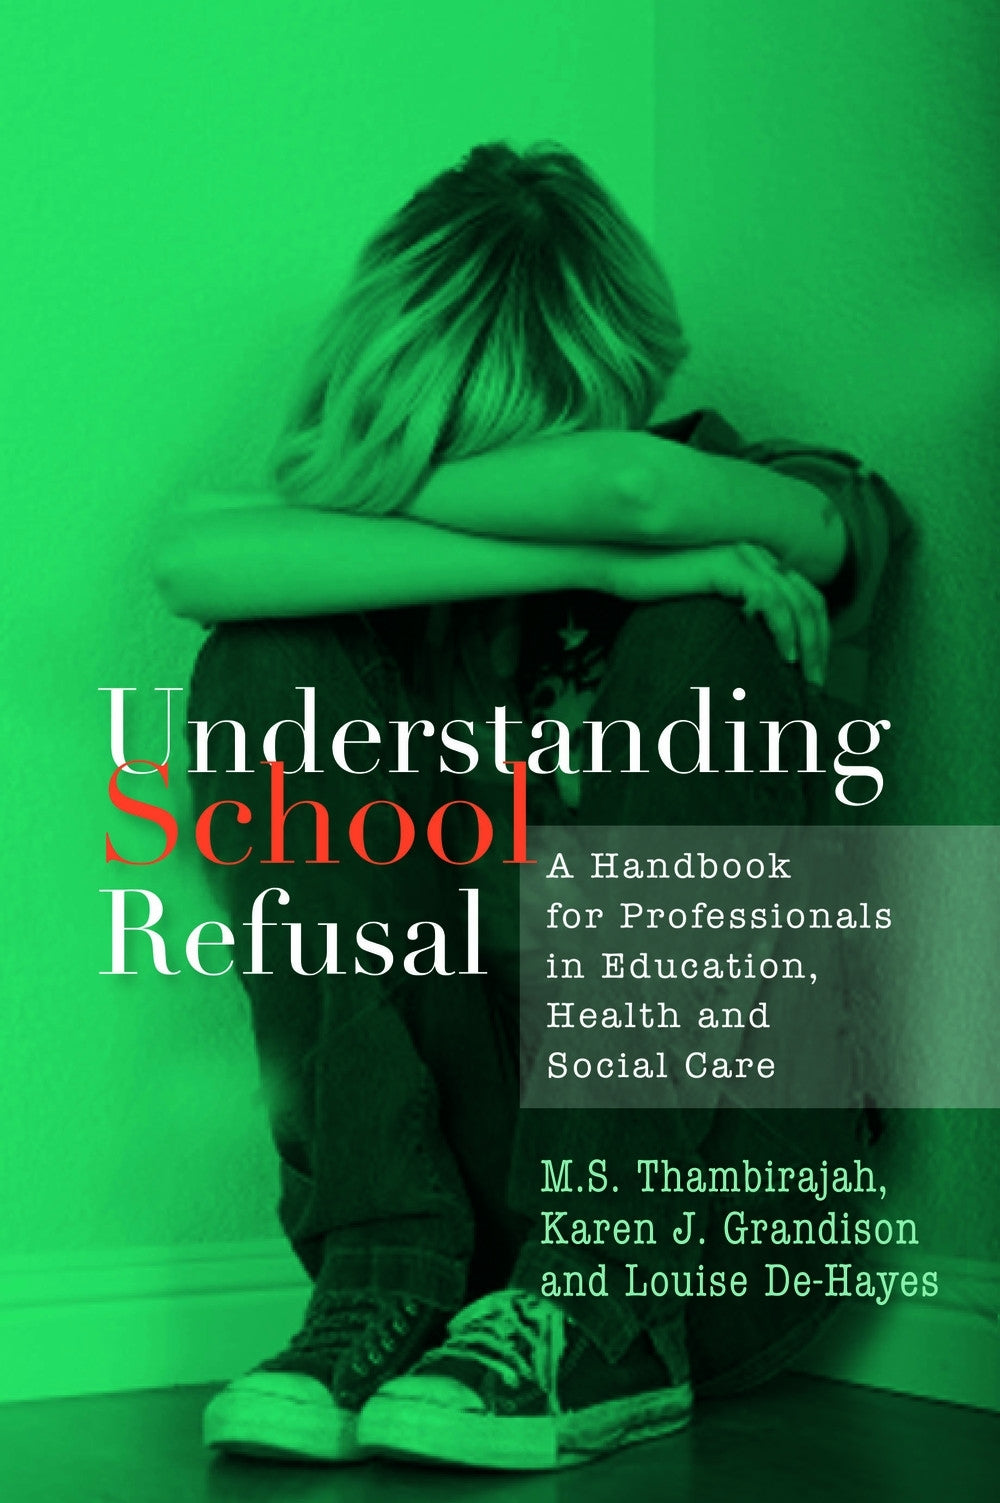 Understanding School Refusal by M. S. Thambirajah, Karen J. Grandison, Louise De-Hayes